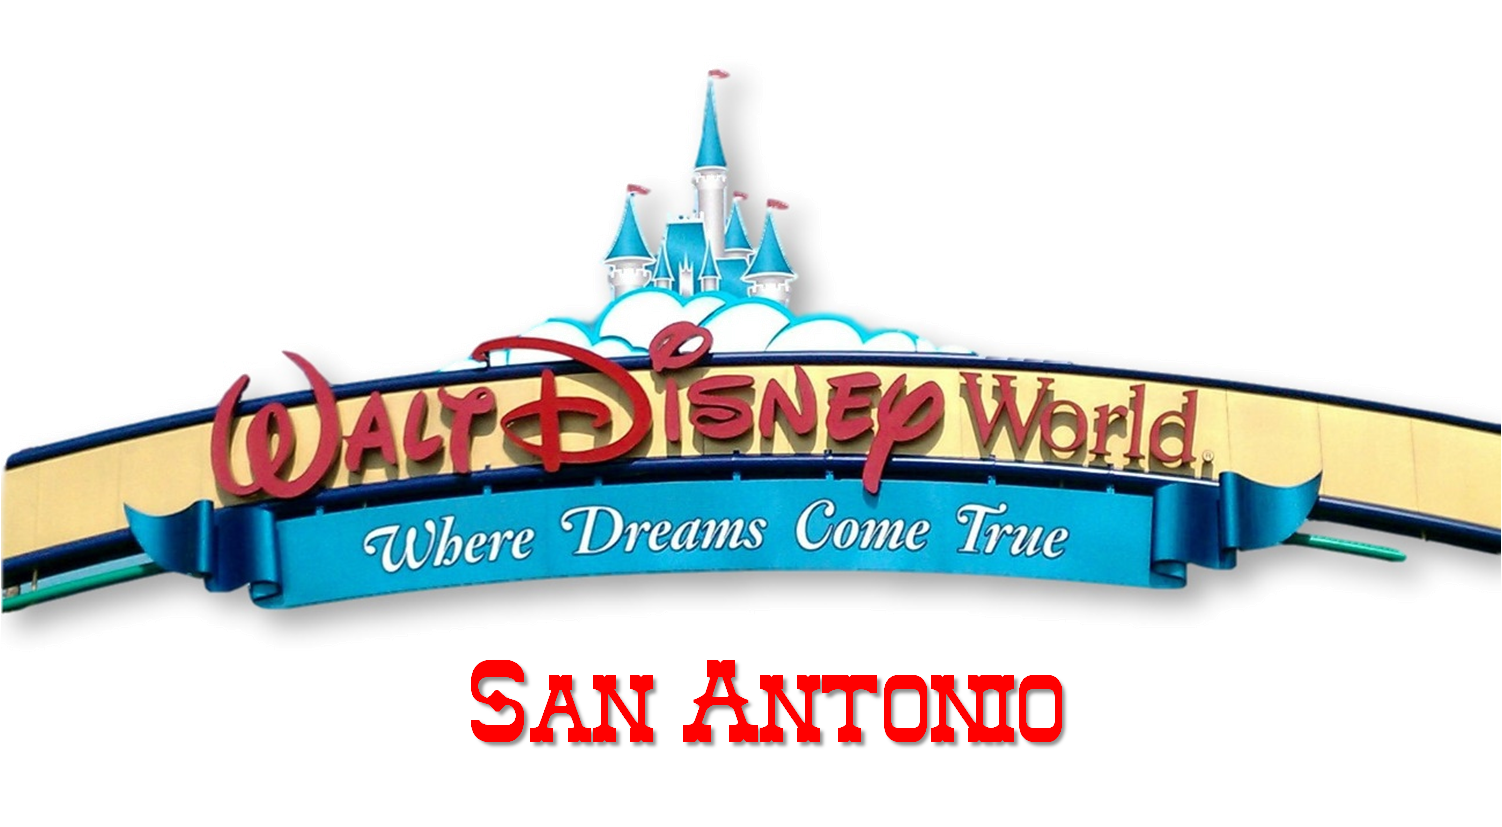 walt disney world where dreams come true logo